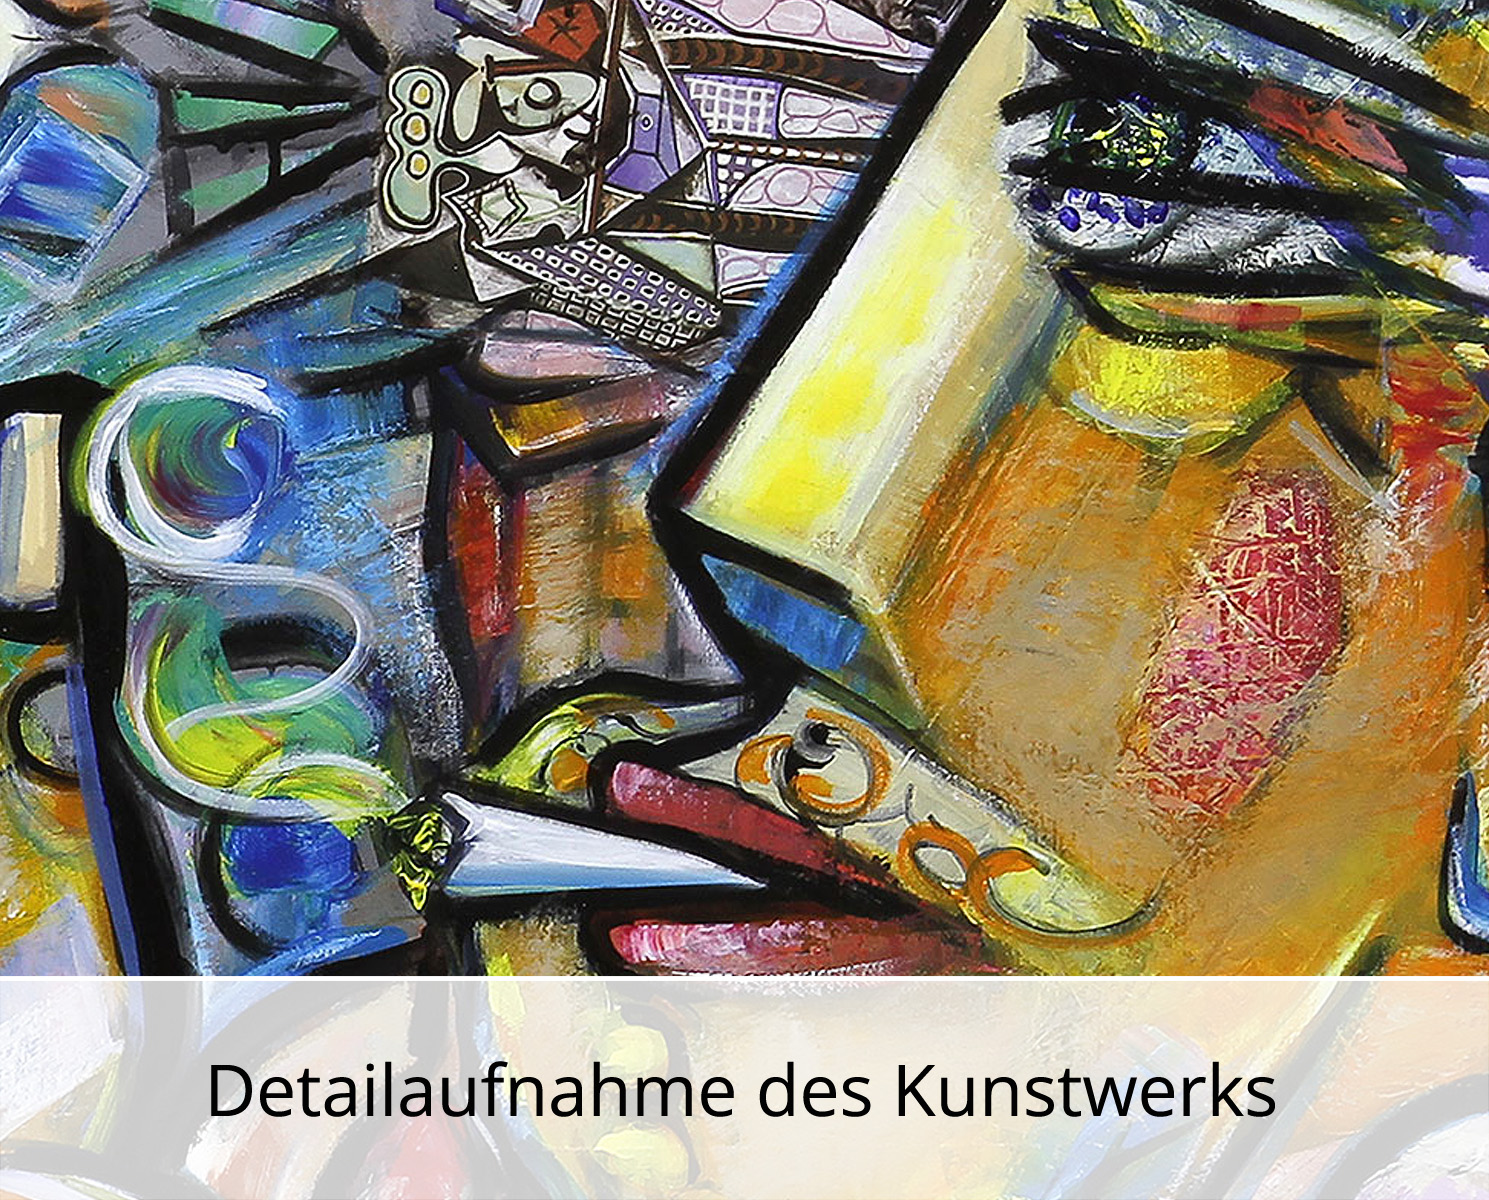 Kunstdruck, signiert: Der Weinkenner II, K. Namazi, Edition